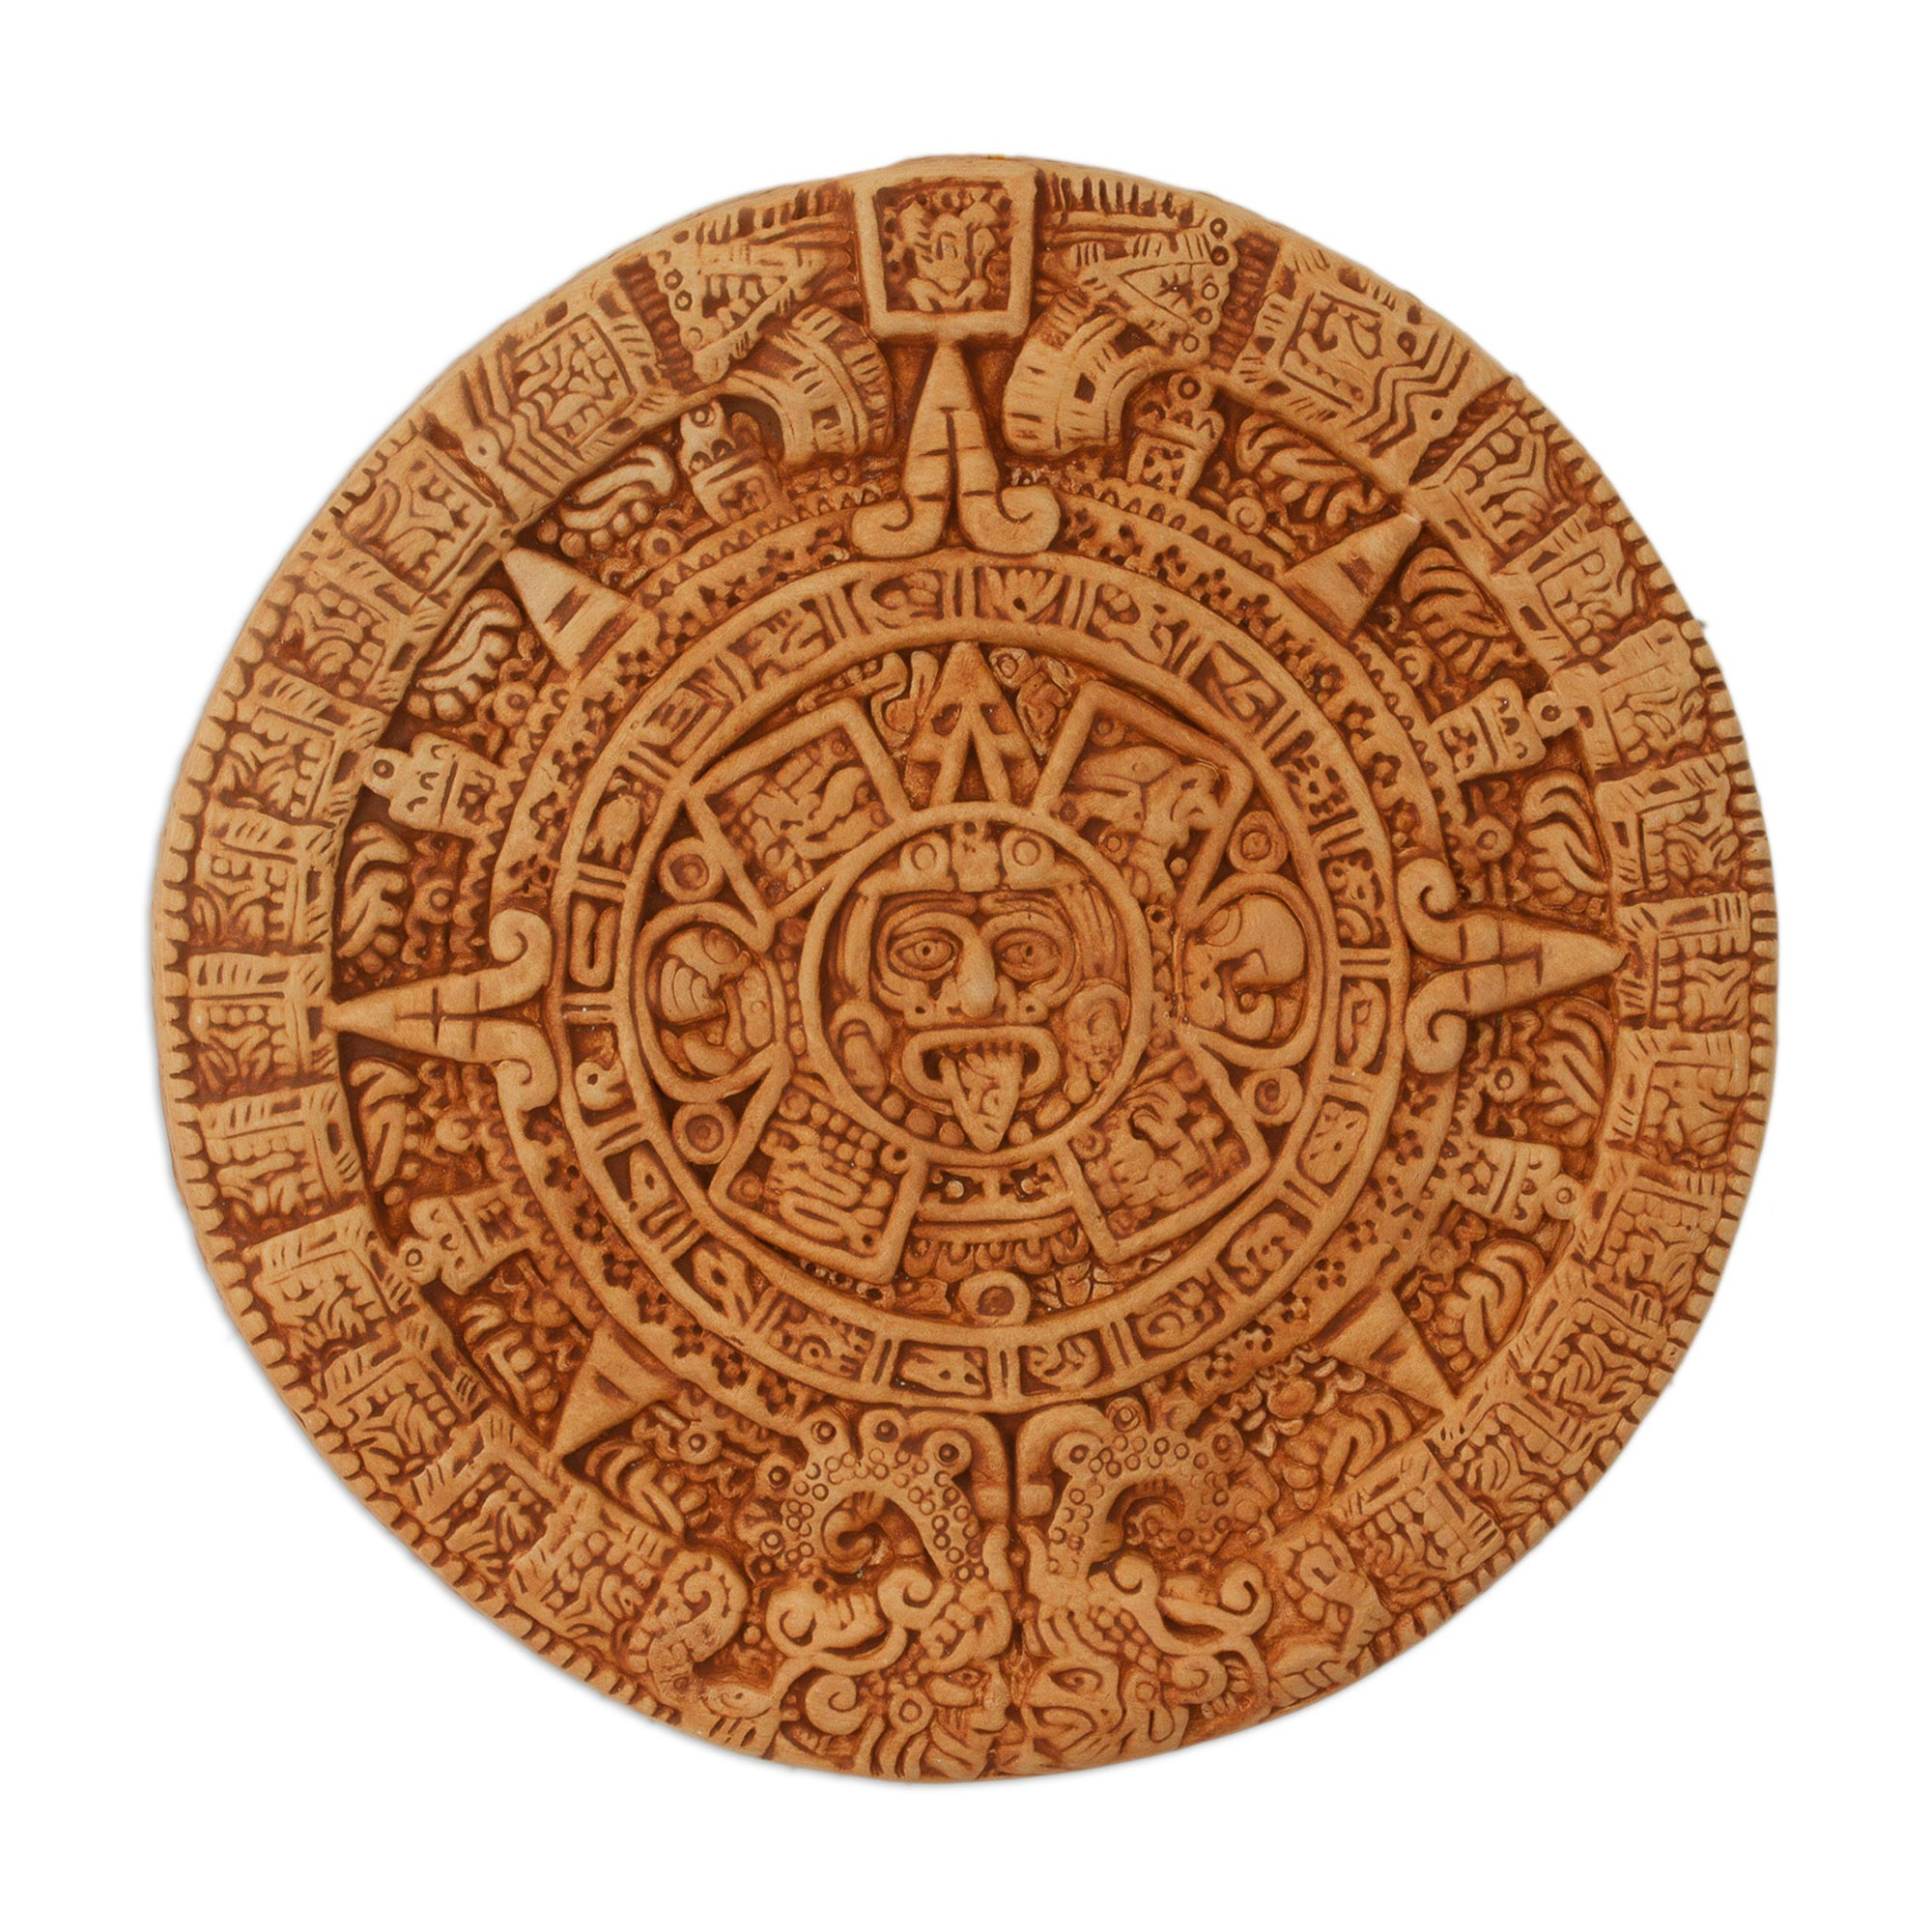 Календарь ма й я слушать. Древний Ацтекский календарь. Солнечный календарь древних ацтеков. Древний календарь Майя. Камень солнца ацтеков.